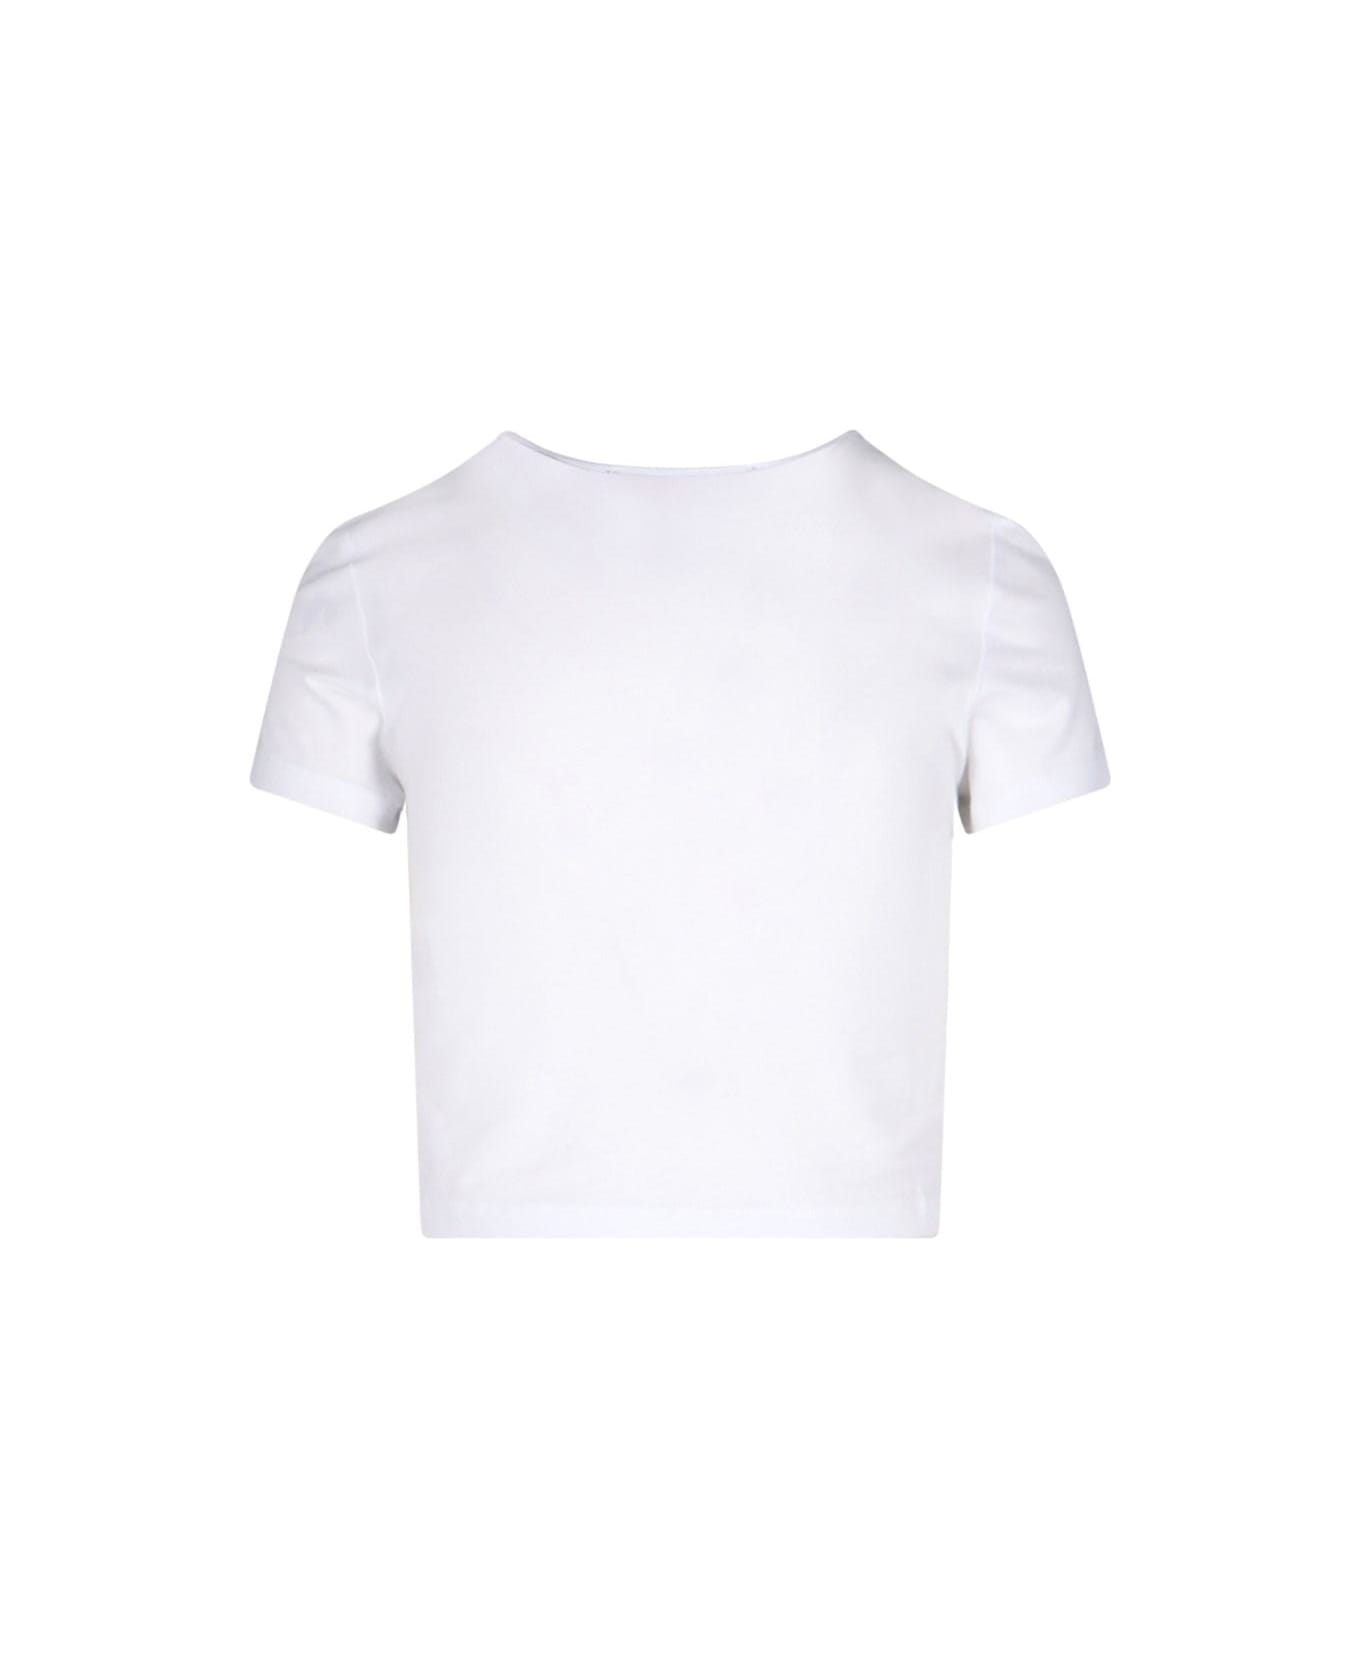 Rotate by Birger Christensen Logo Crop T-shirt - Bright white